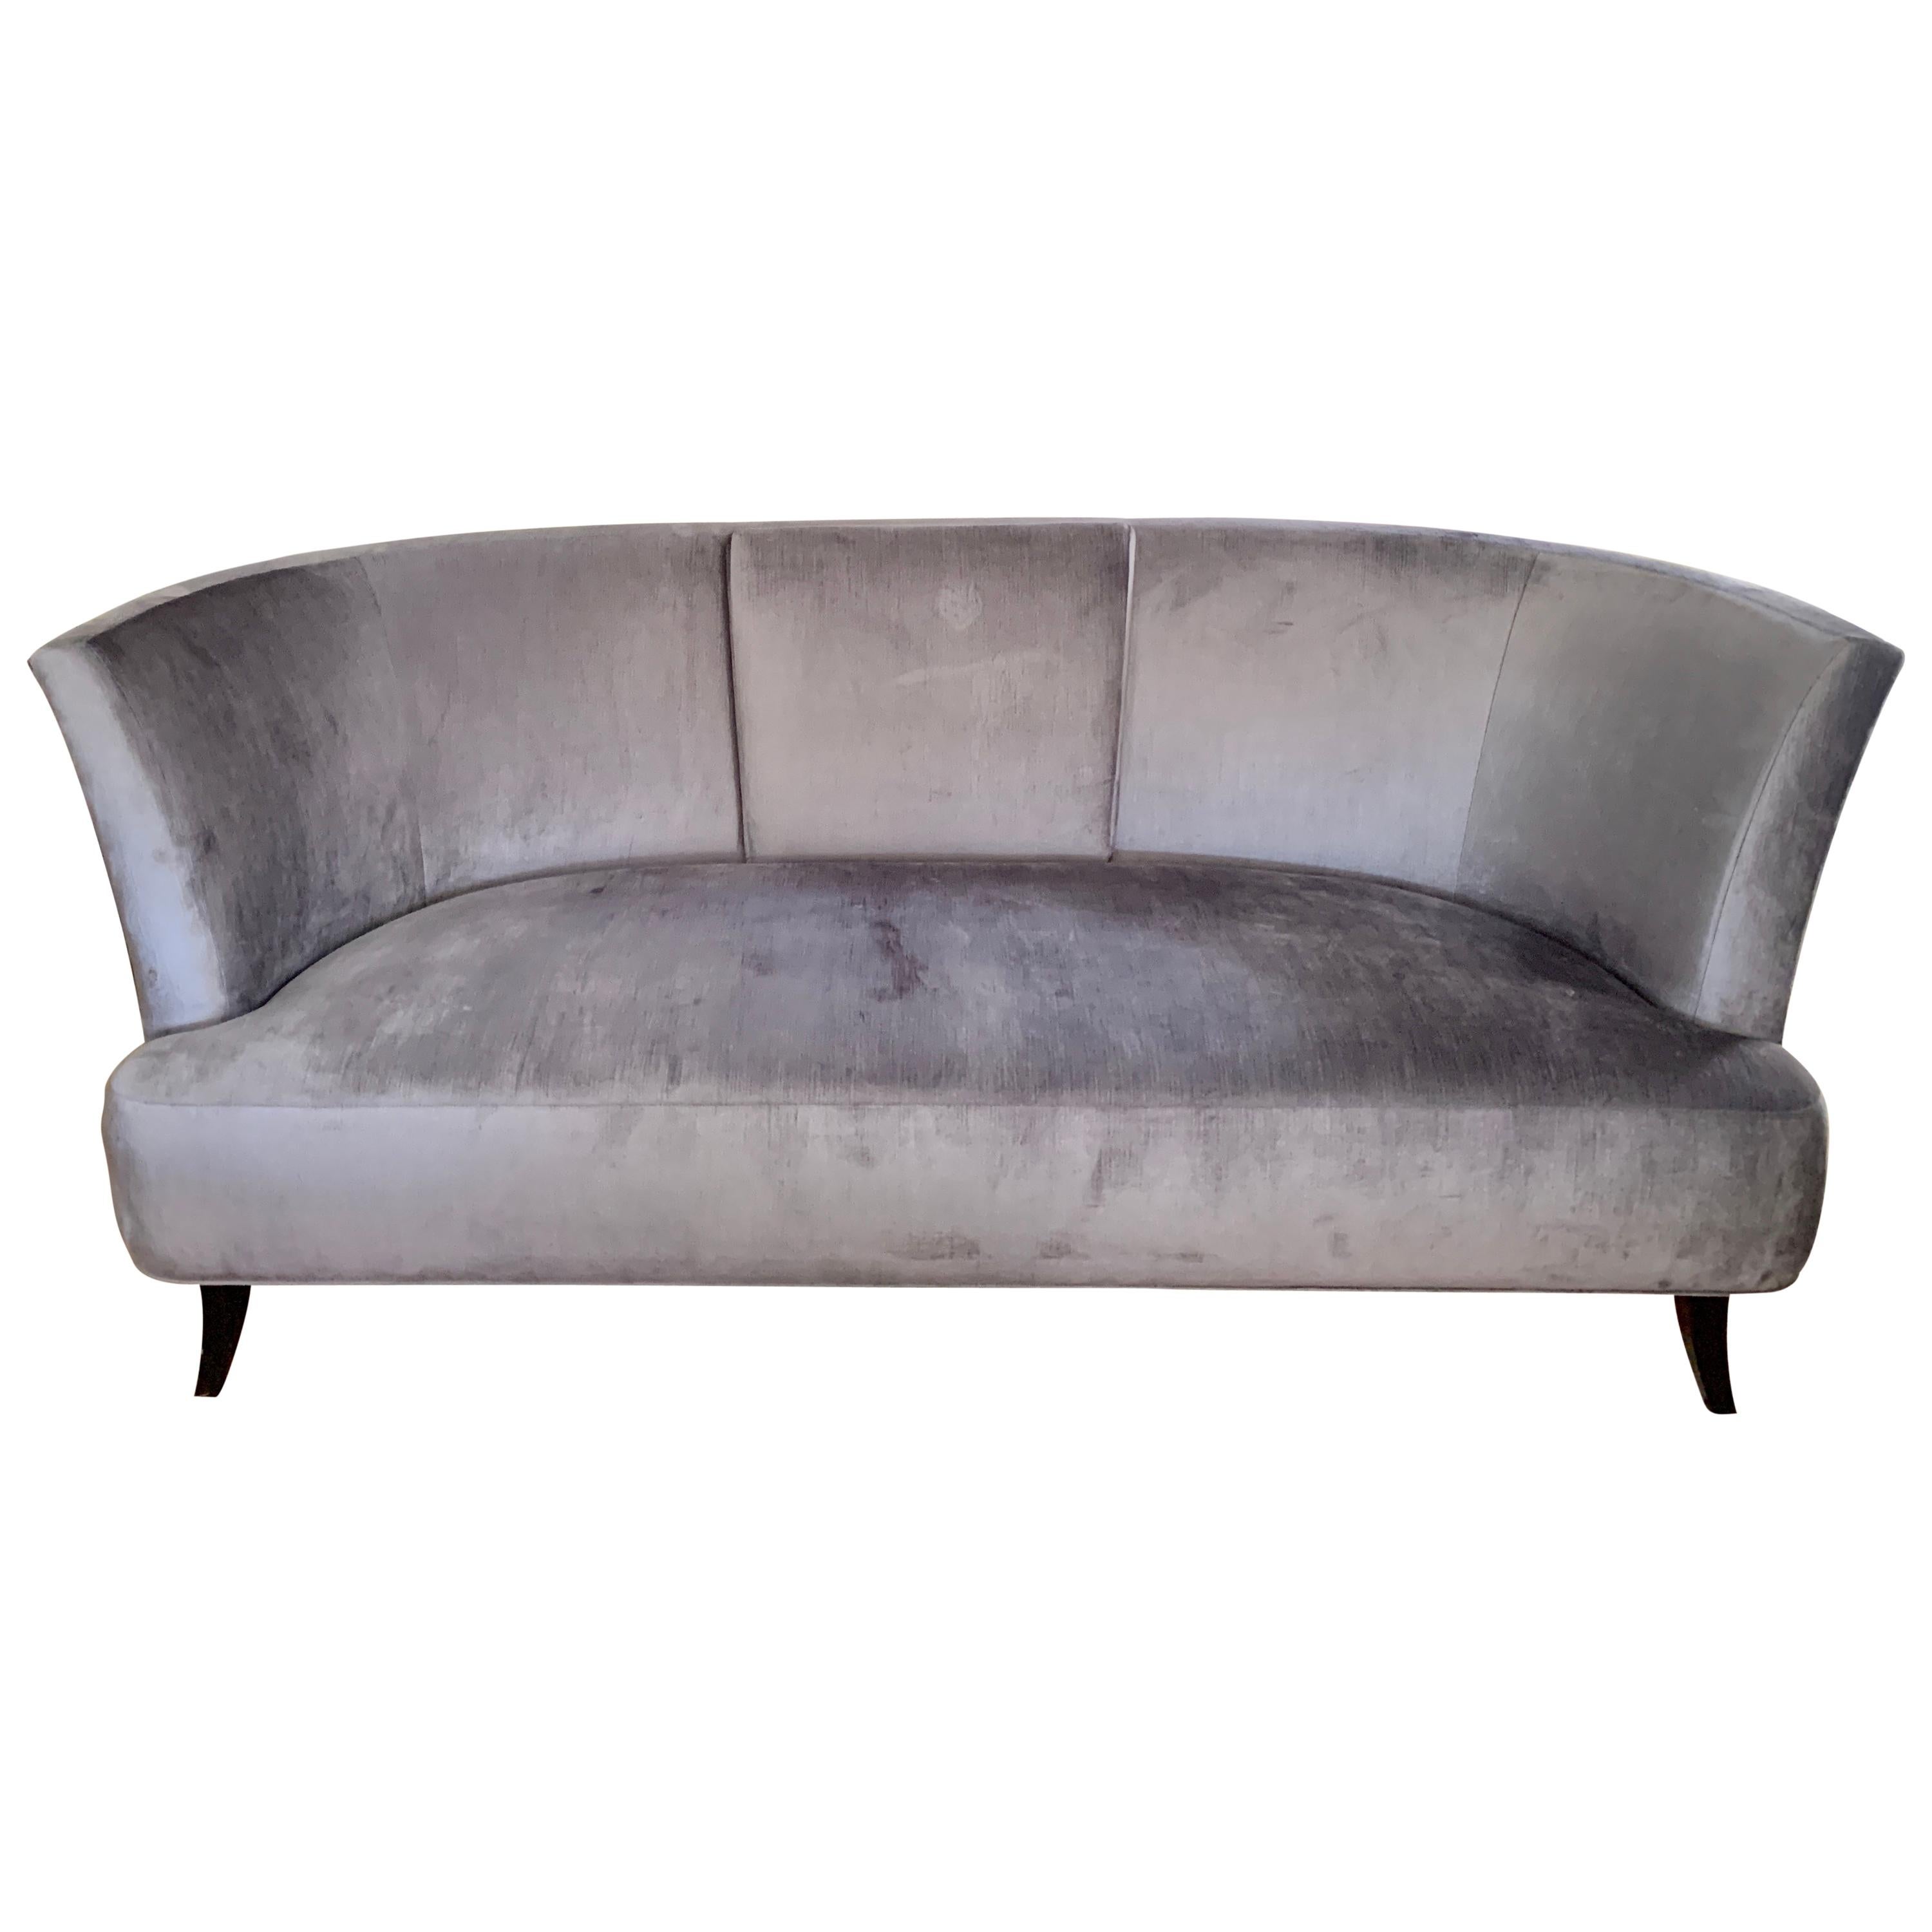 Canapé en velours gris avec dossier